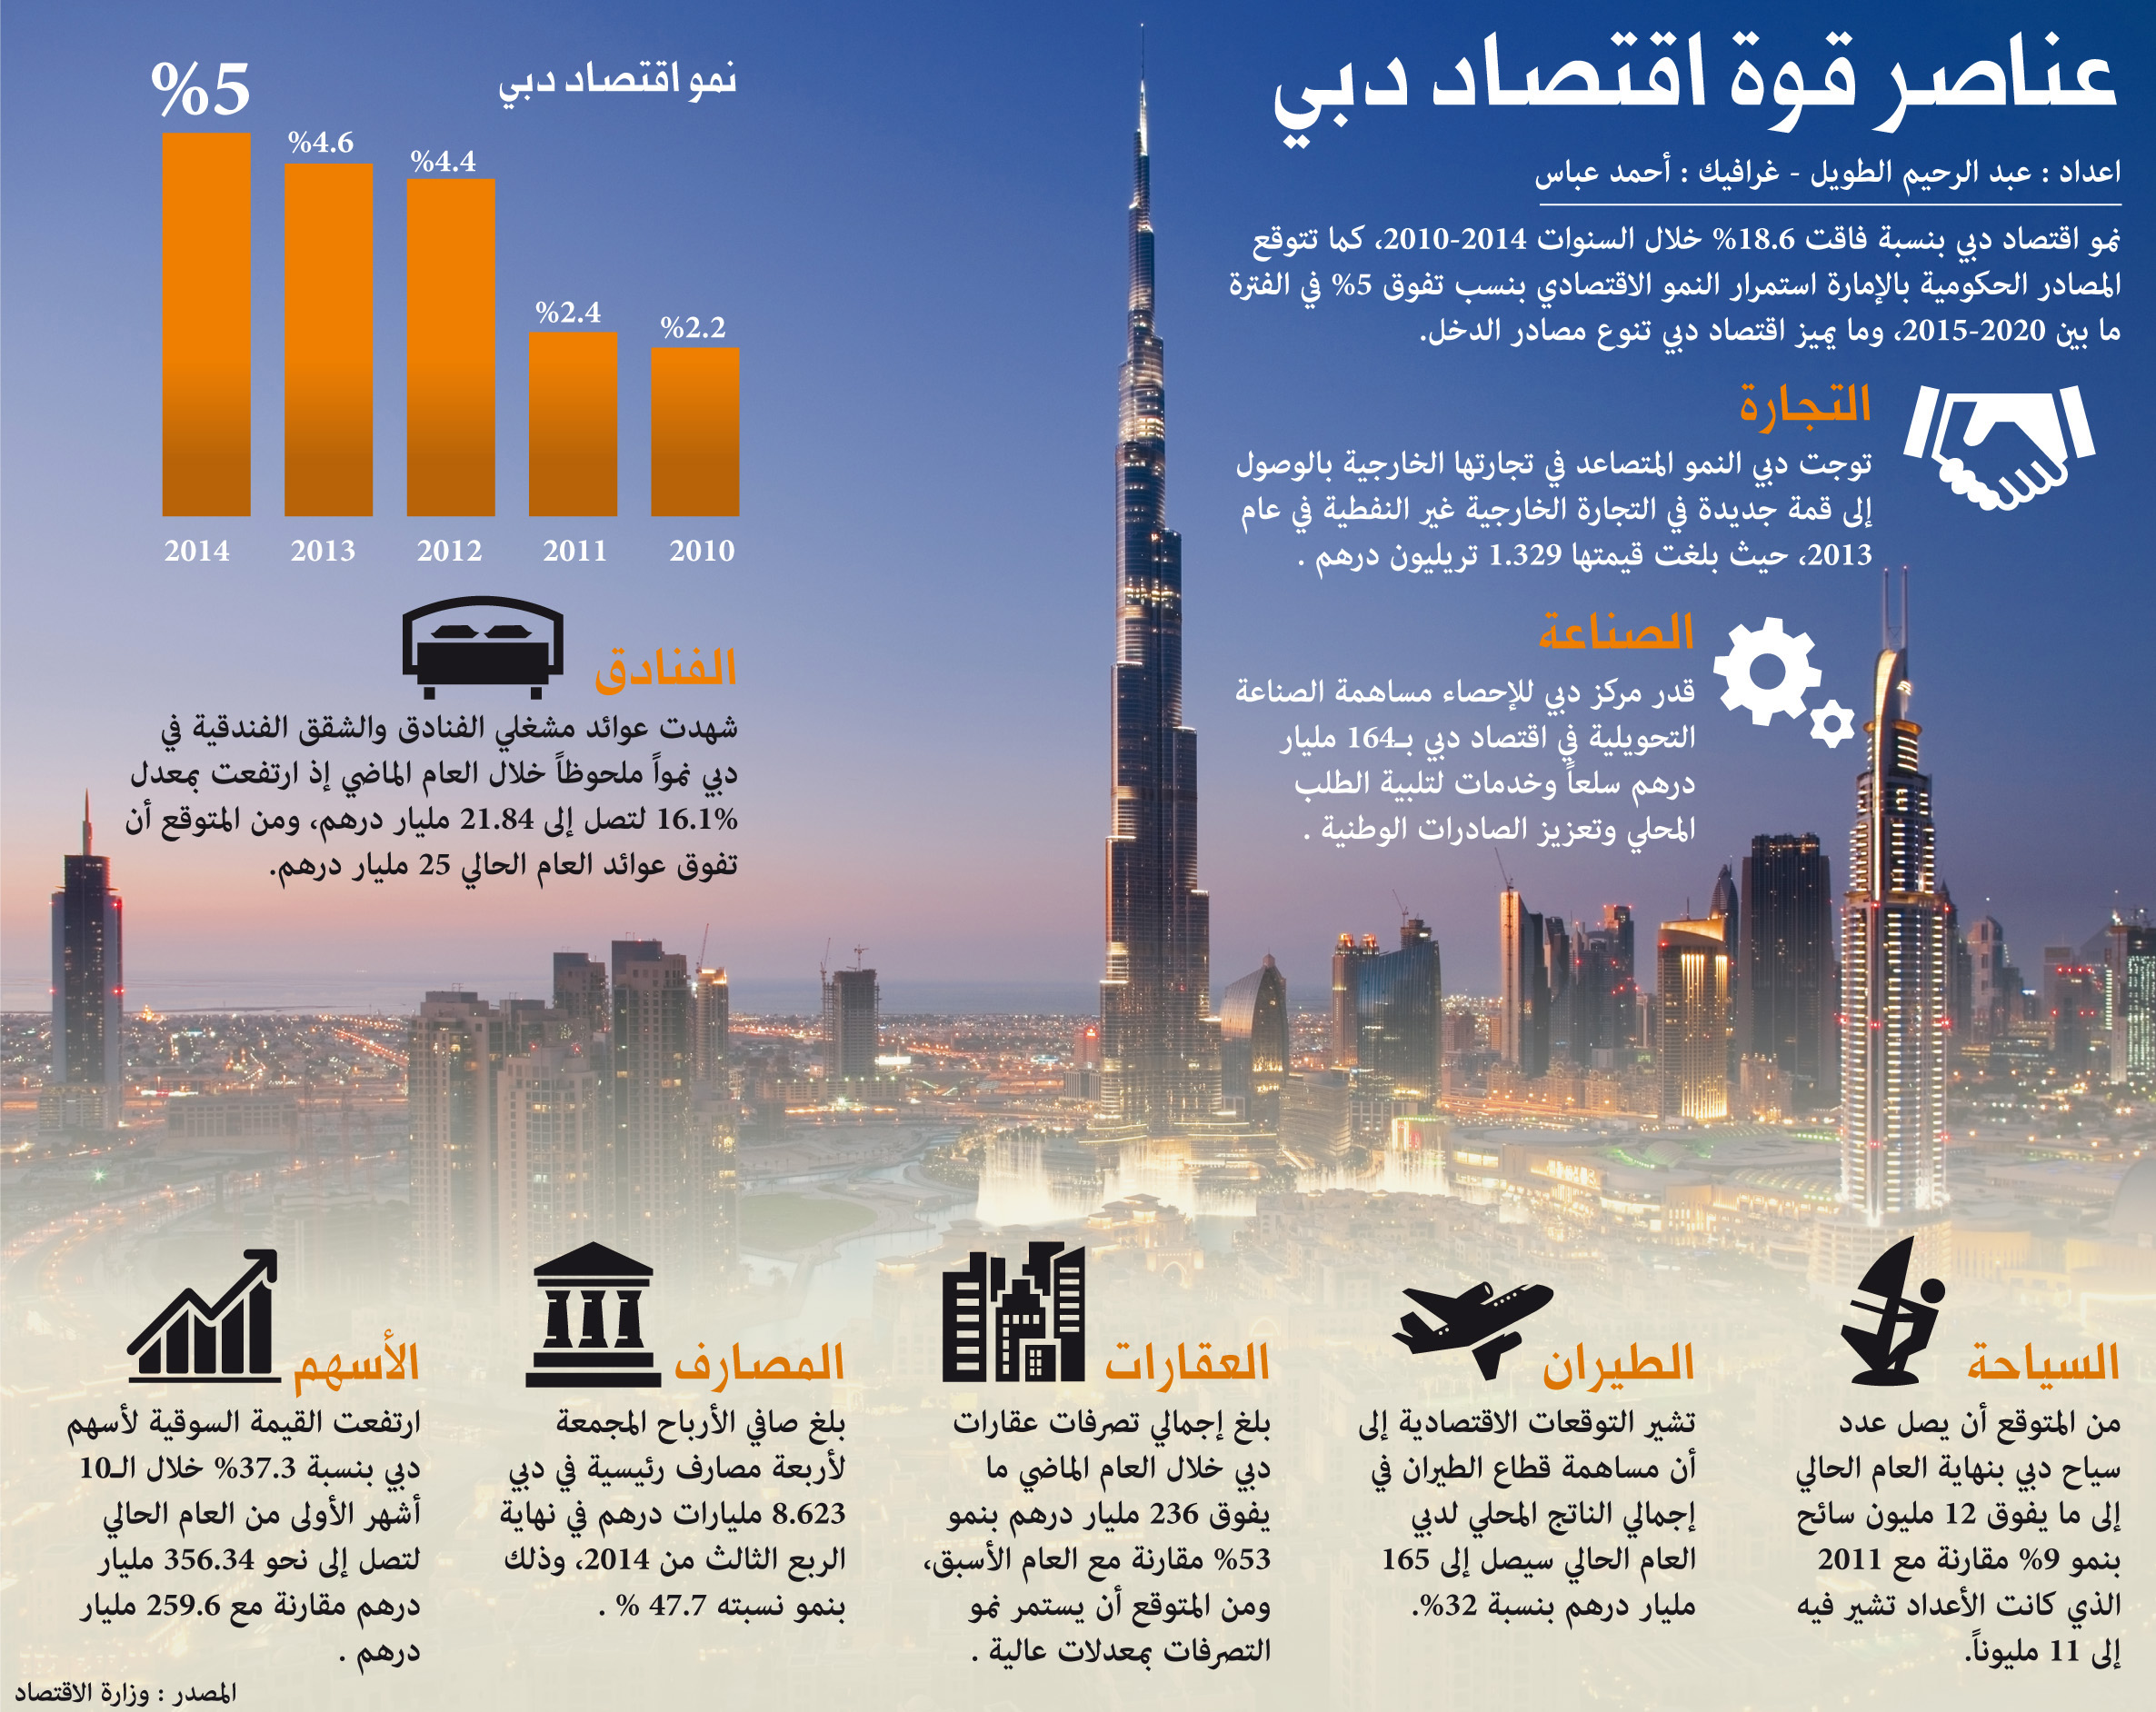 تنويع مصادر الدخل في الكويت